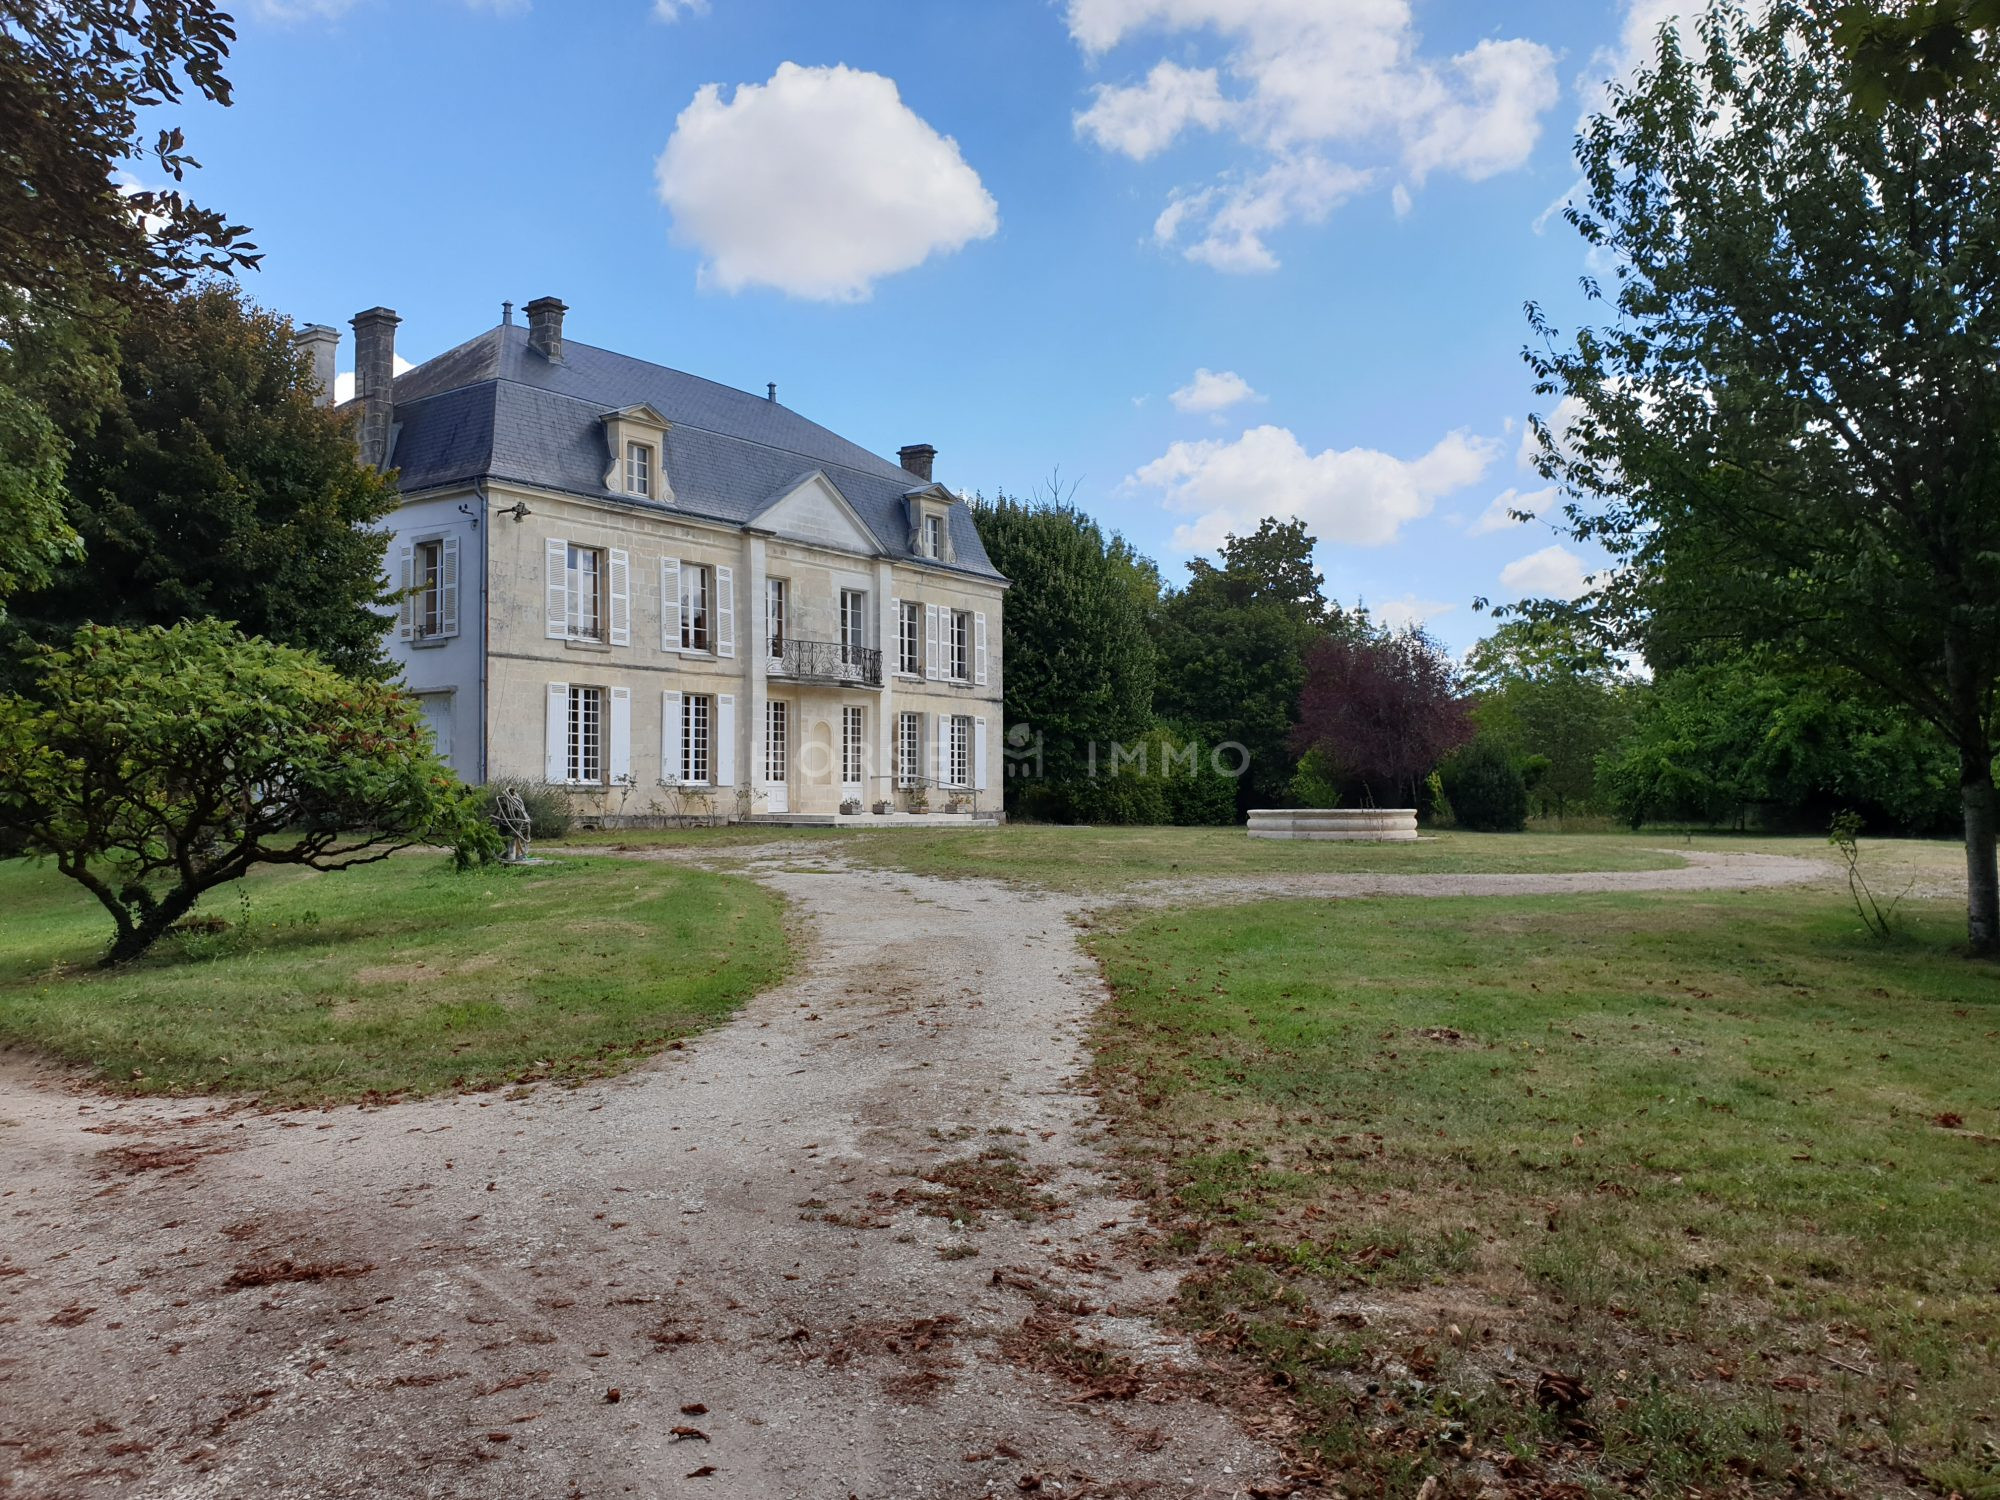 1614339527 VM1666 1 original - Château et ses 2 logements sur 30ha clos de murs